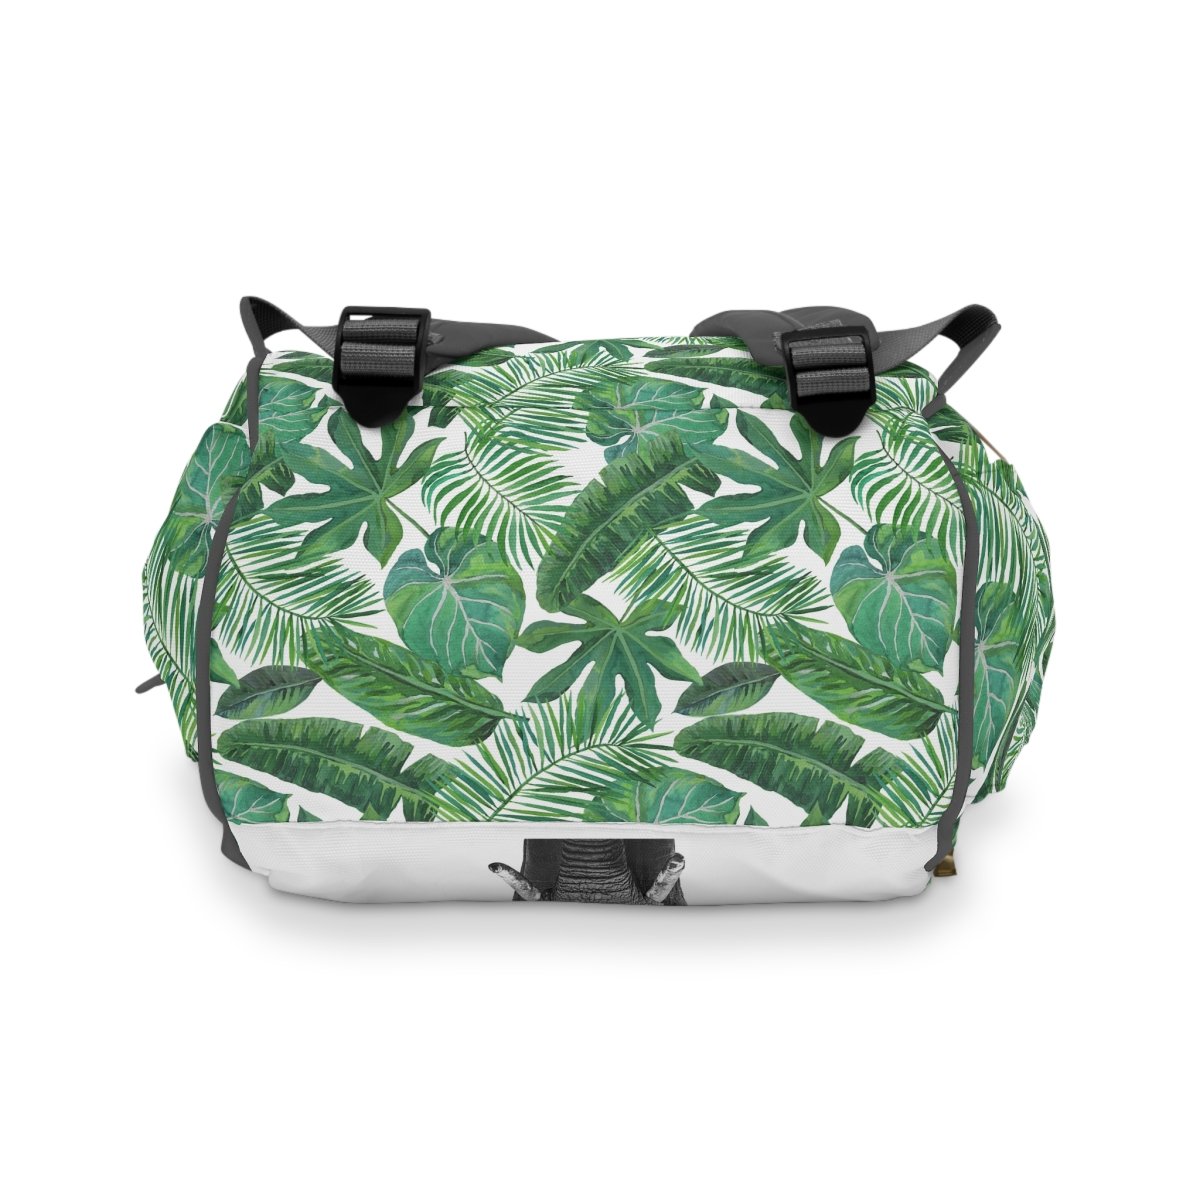 Modern Jungle Personalized Backpack Diaper Bag - gender_boy, gender_neutral, Modern Jungle